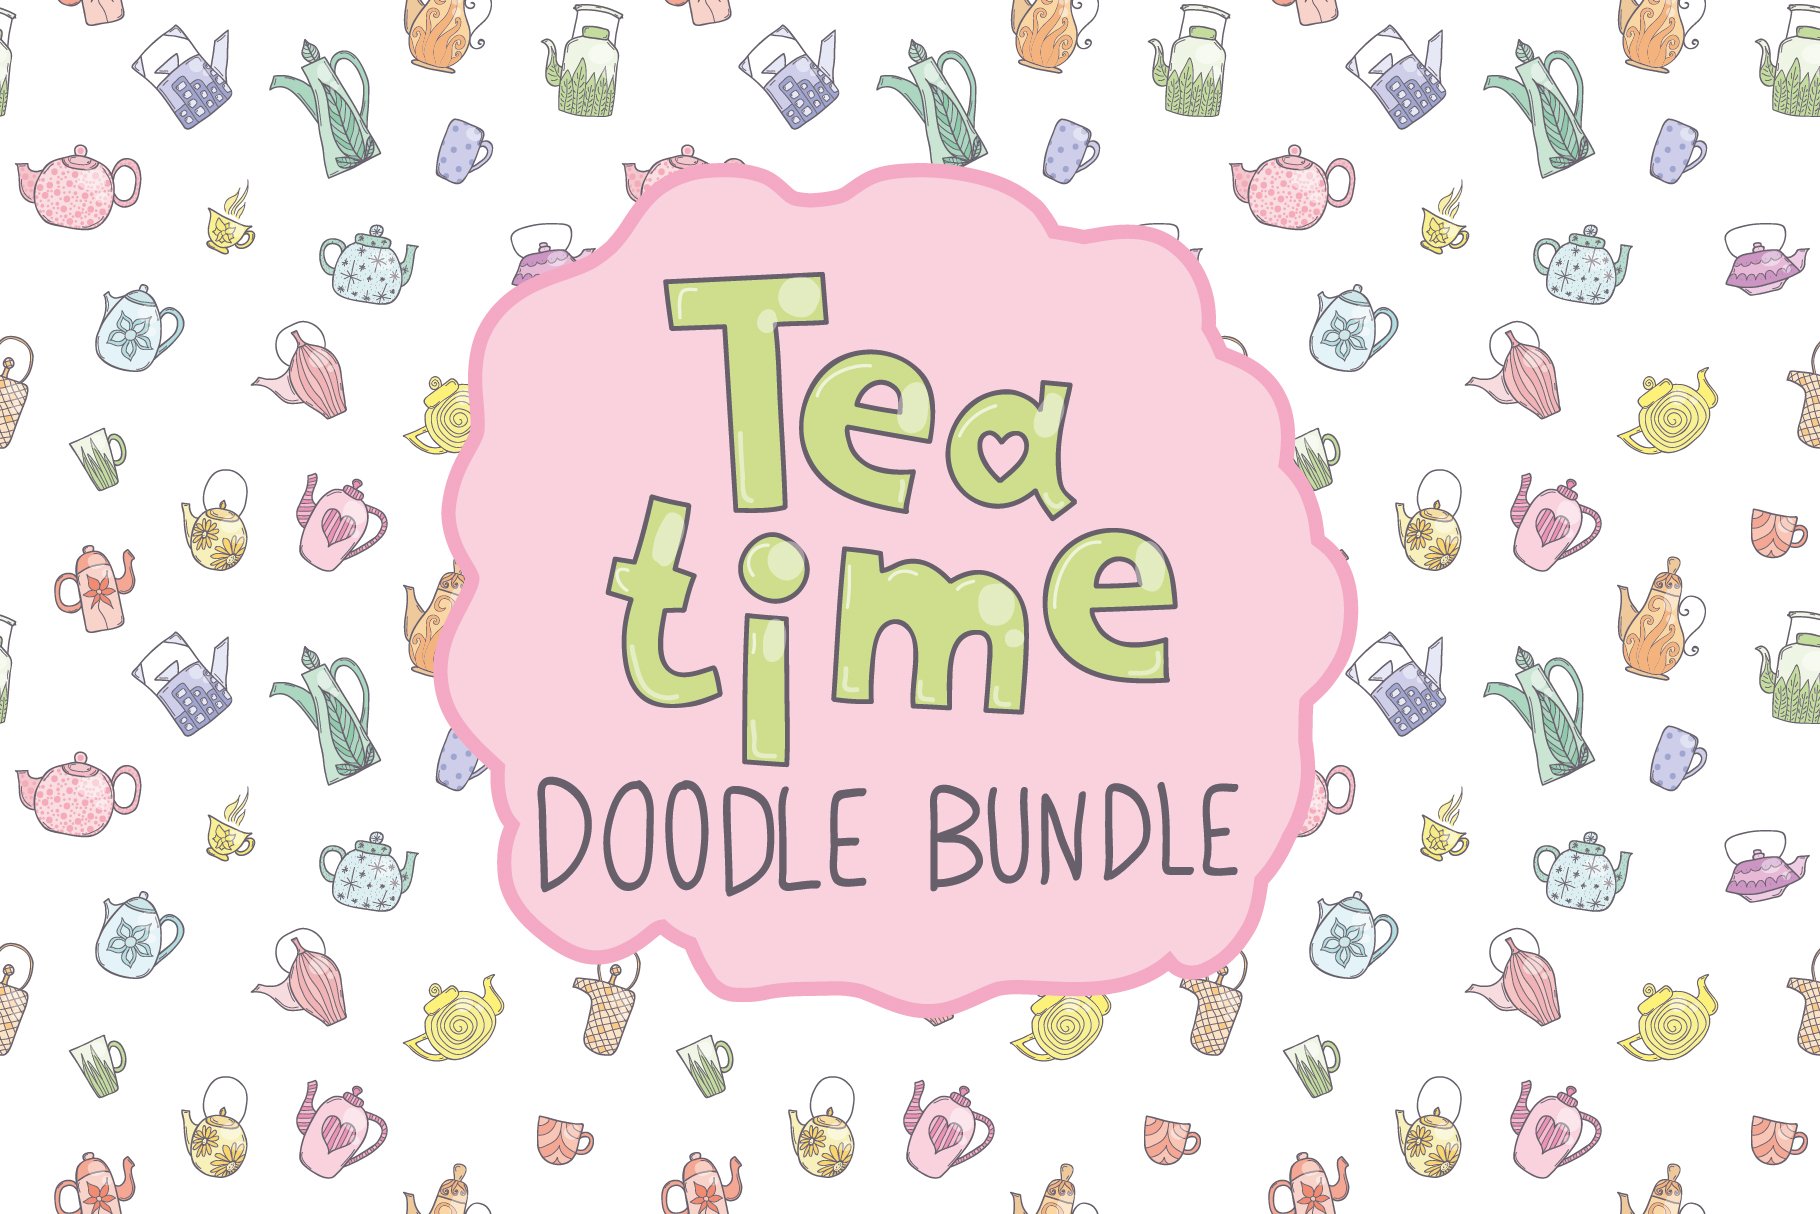 喝茶时光的绘画包 Tea time doodle bundl